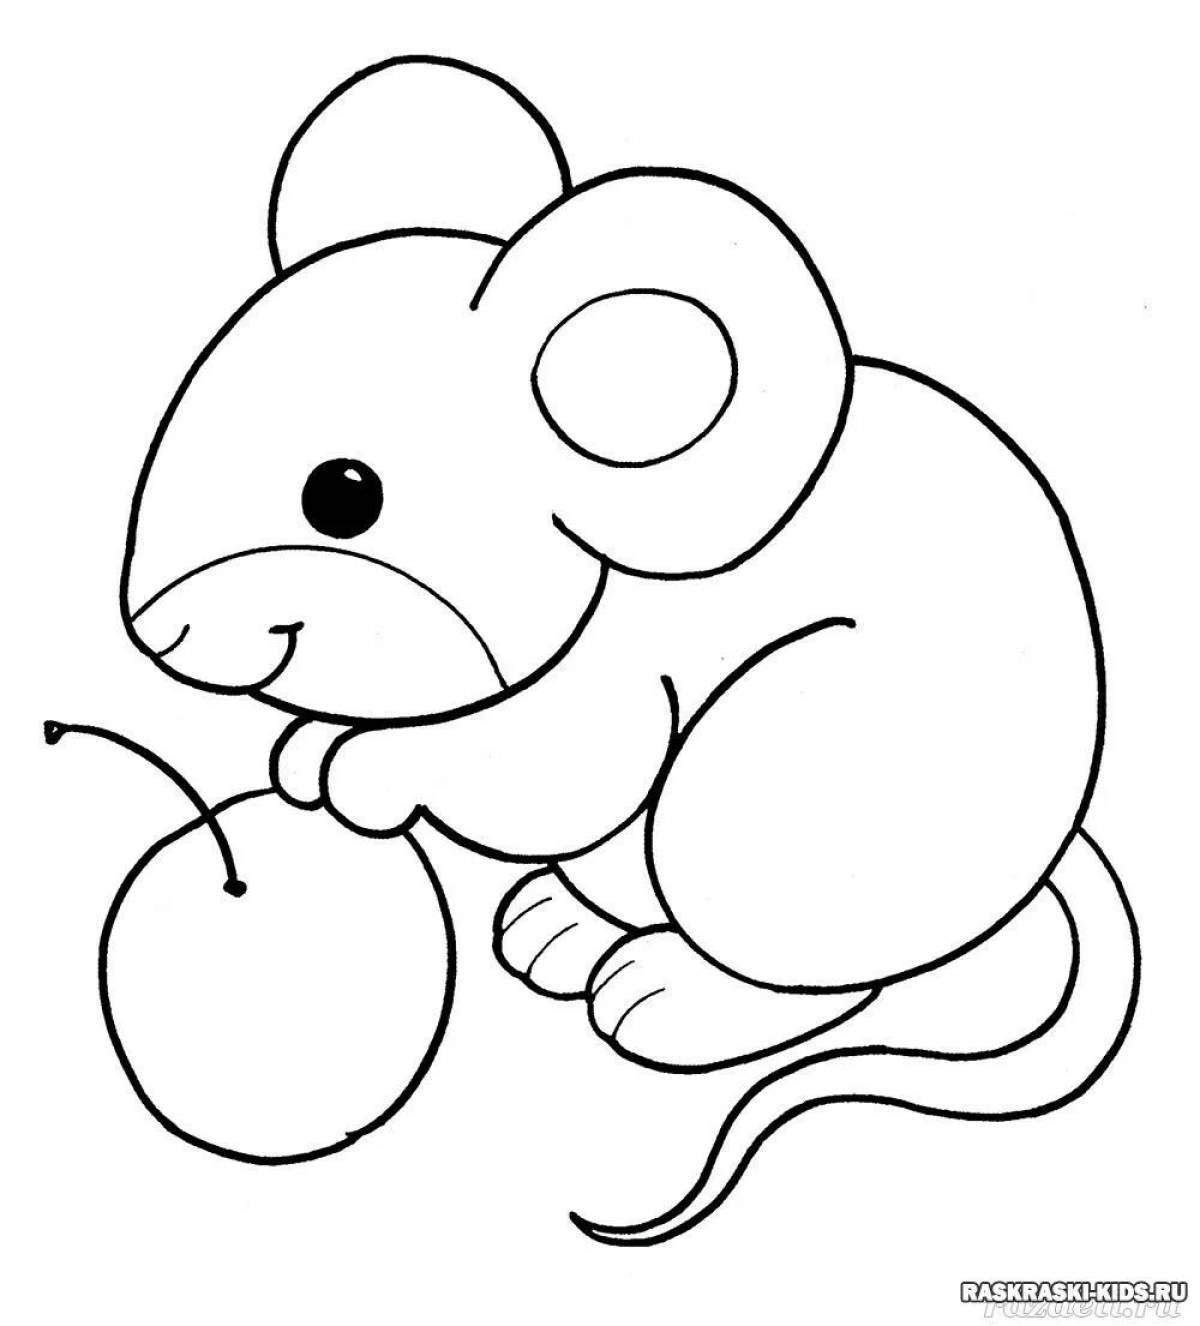 Живая раскраска мышь для детей 2-3 лет